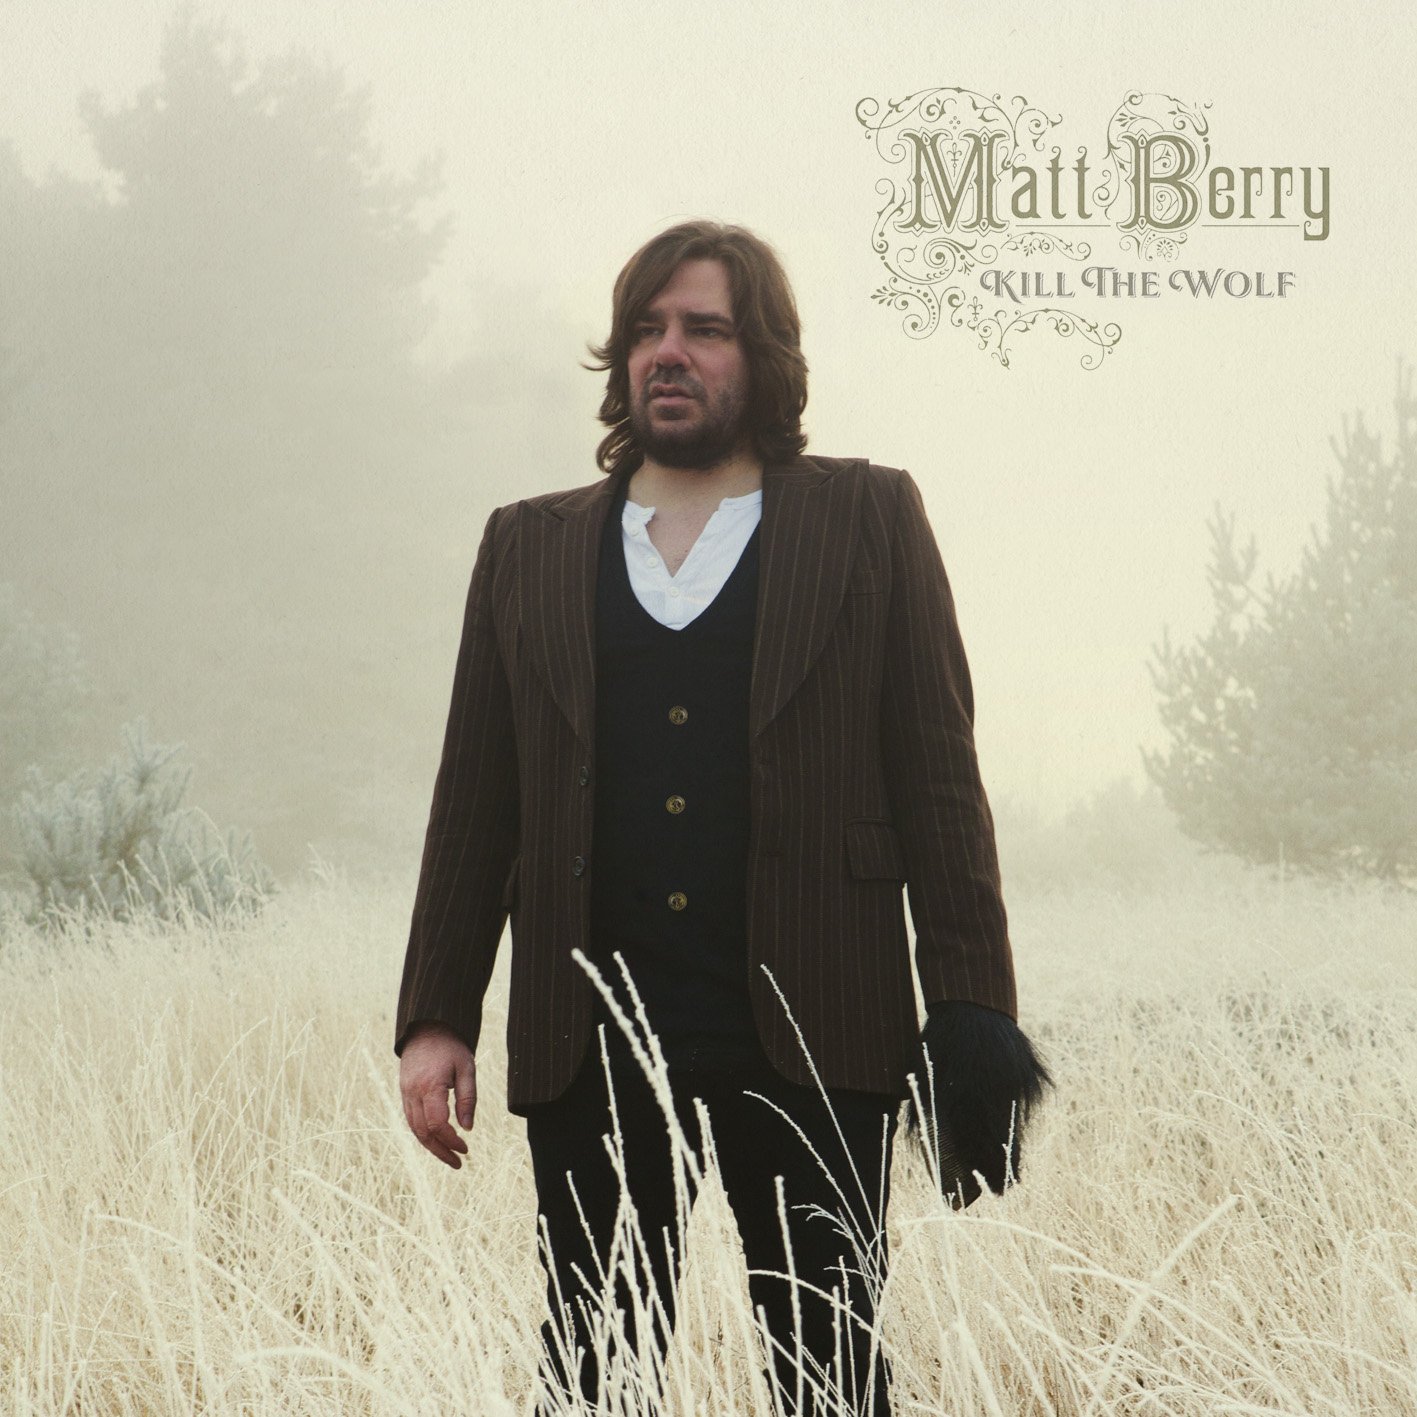 Matt Berry - Liverpool and Manchester